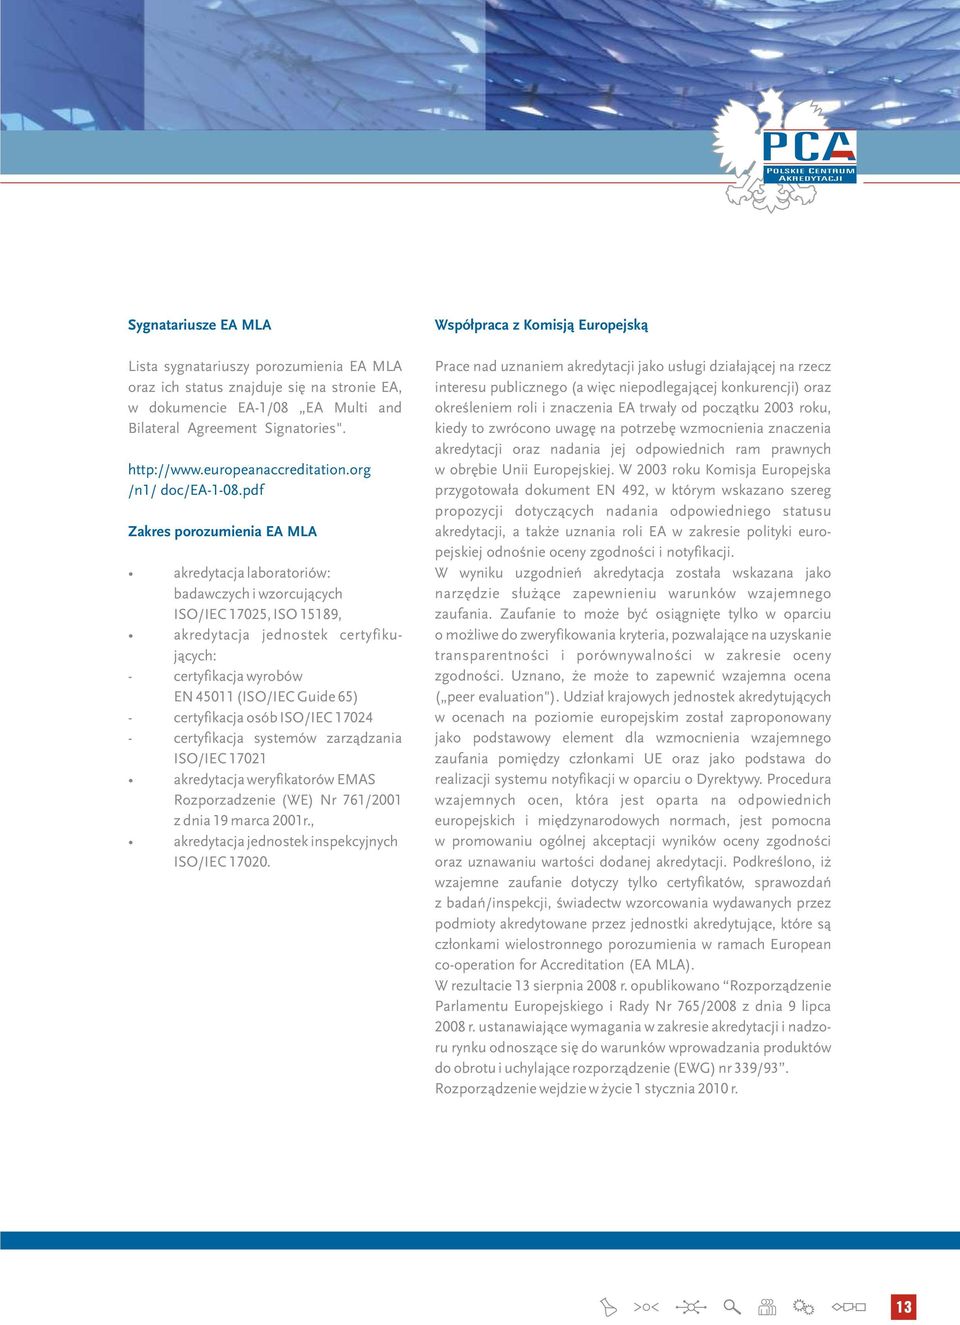 pdf Zakres porozumienia EA MLA akredytacja laboratoriów: badawczych i wzorcujących ISO/IEC 17025, ISO 15189, akredytacja jednostek certyfikujących: - certyfikacja wyrobów EN 45011 (ISO/IEC Guide 65)